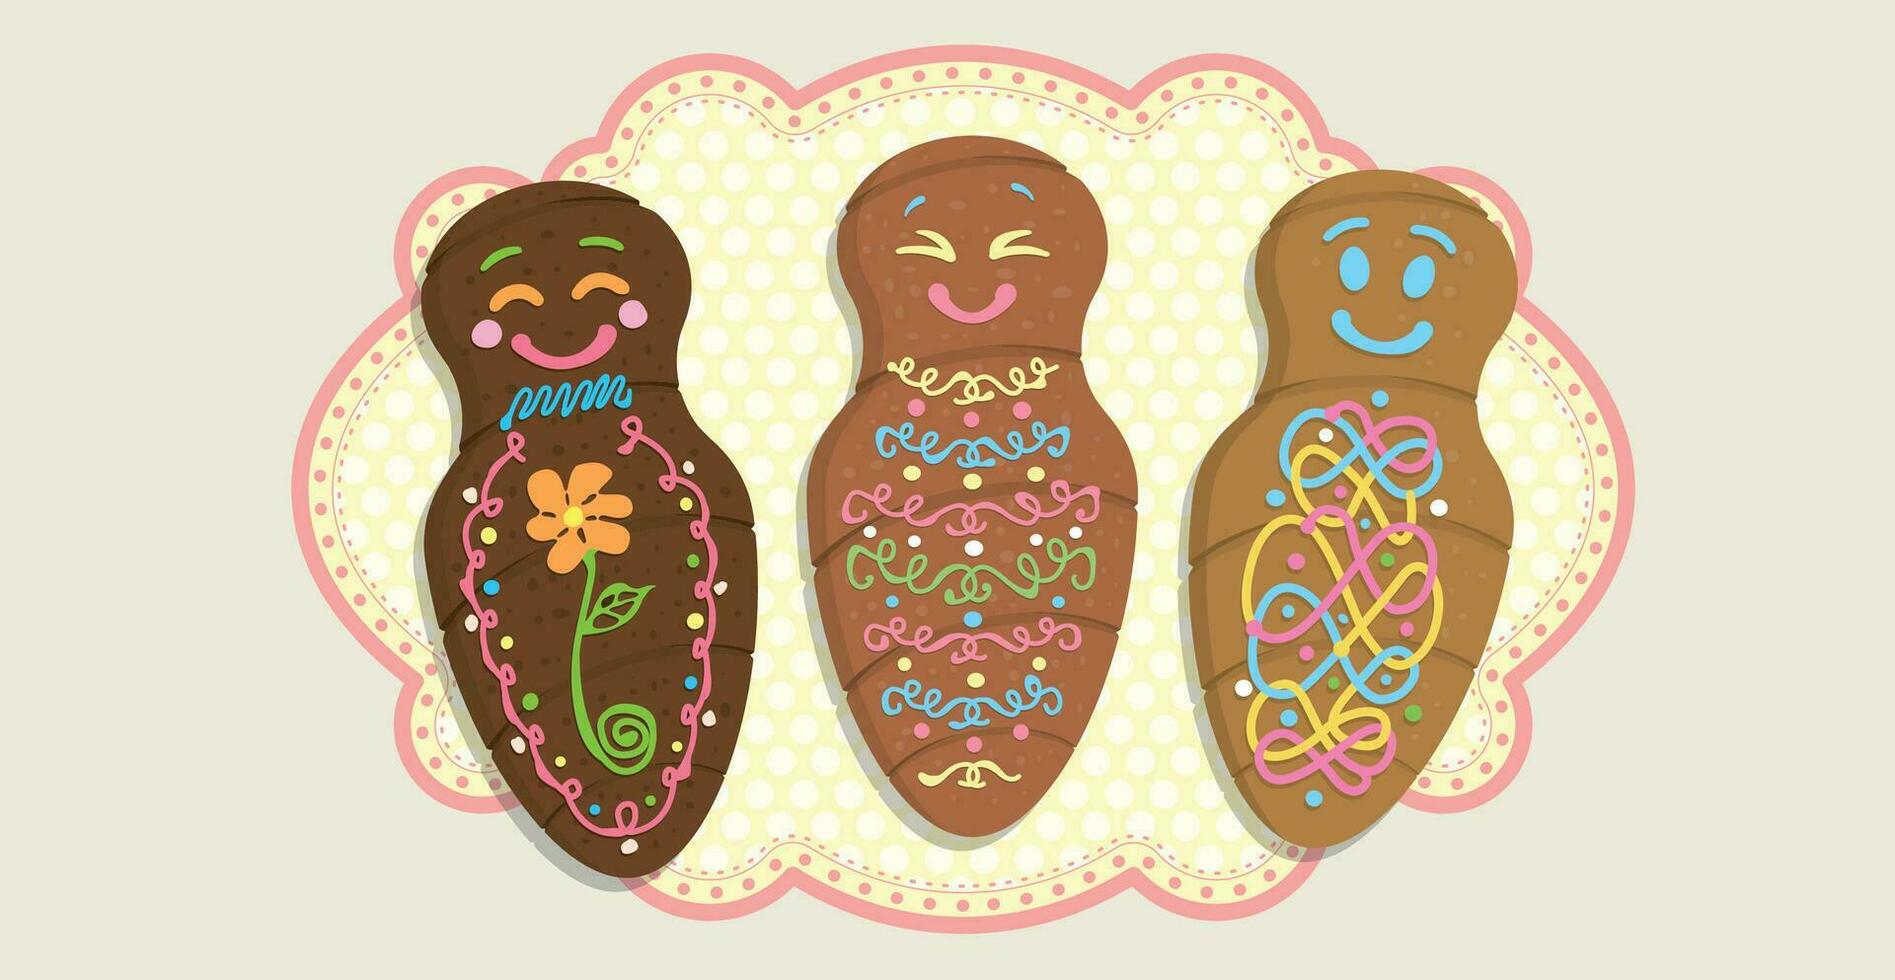 guagua's de pan - brood pop versierd met kleur lijnen in Spaans taal - top visie van 3 verschillend versierd brood Aan een geel ovaal tafelkleed met roze grens vector